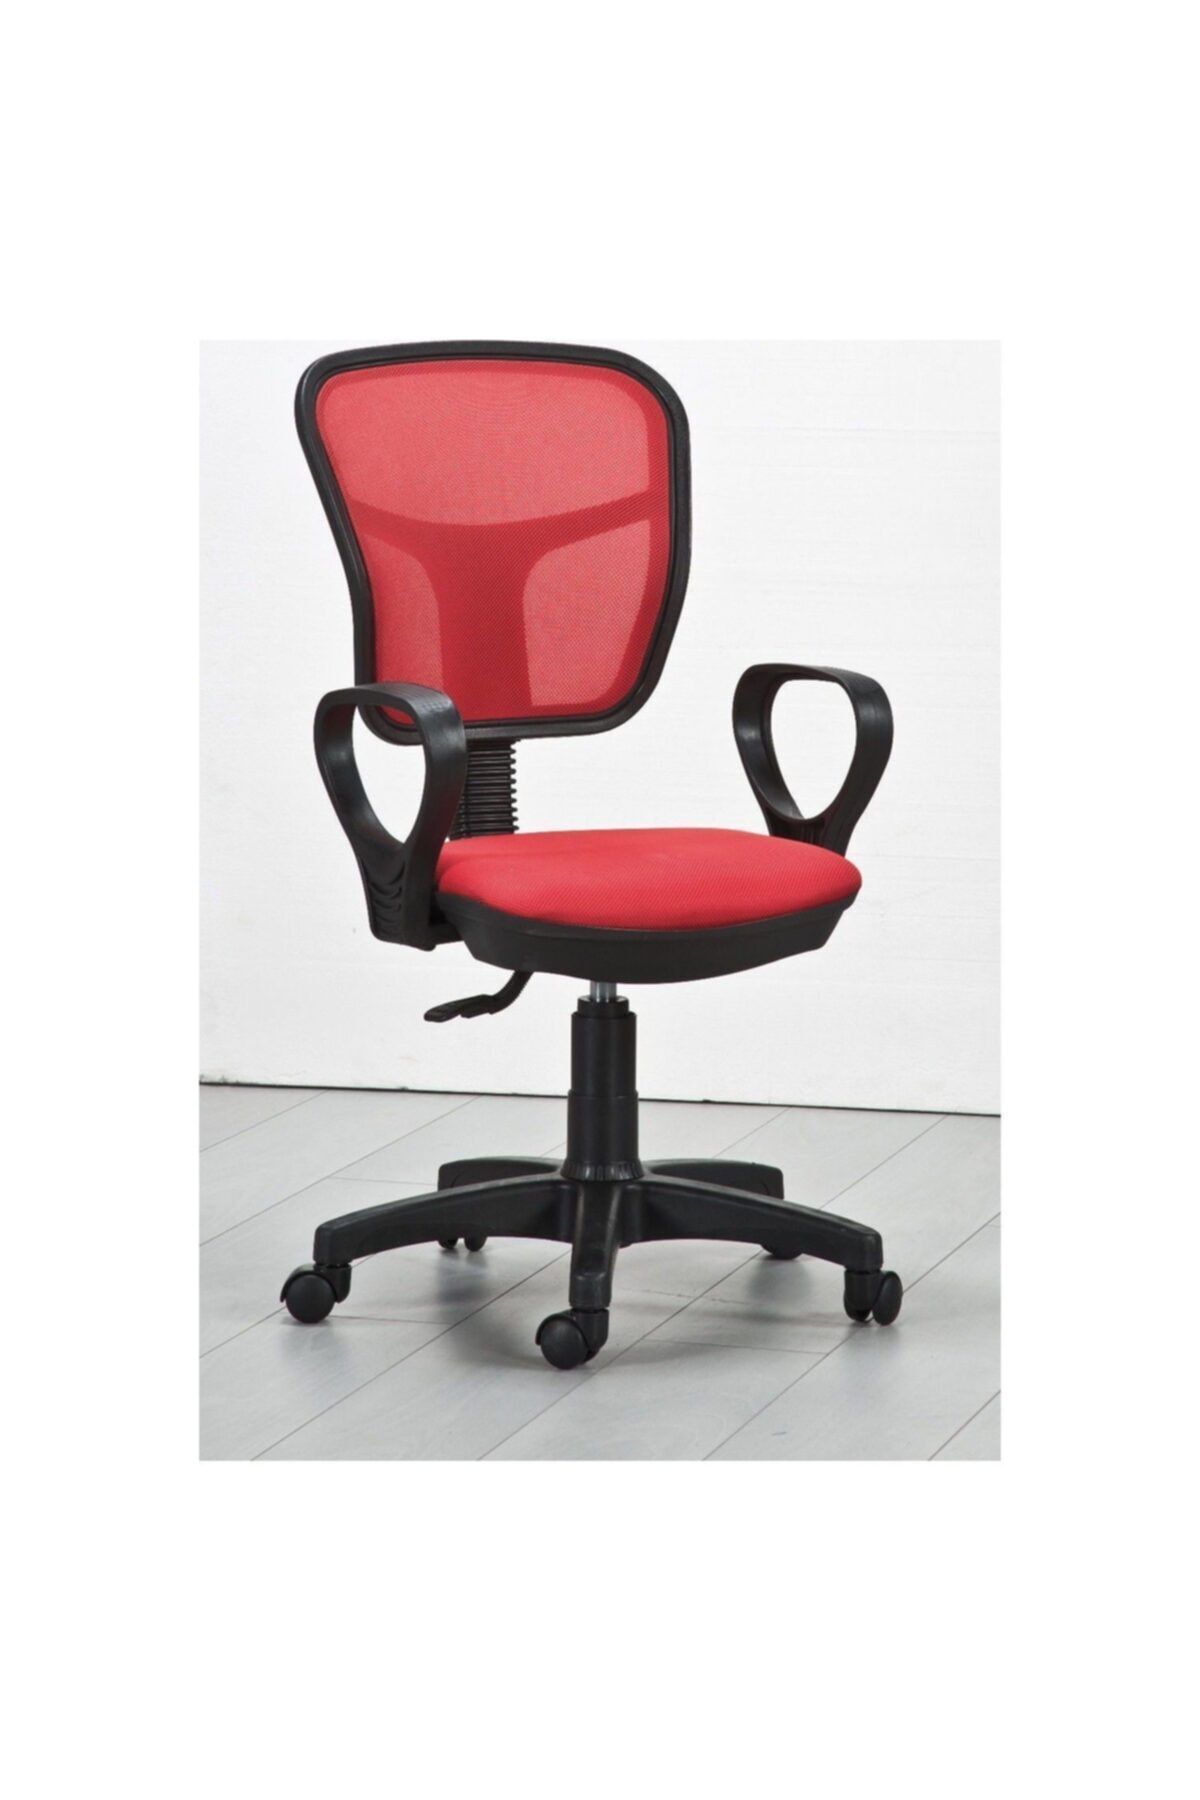 Genel Markalar Fileli Öğrenci Sandalyesi Ofis Sandalyesi Dönerli Sandalye Çalışma Sandalyesi